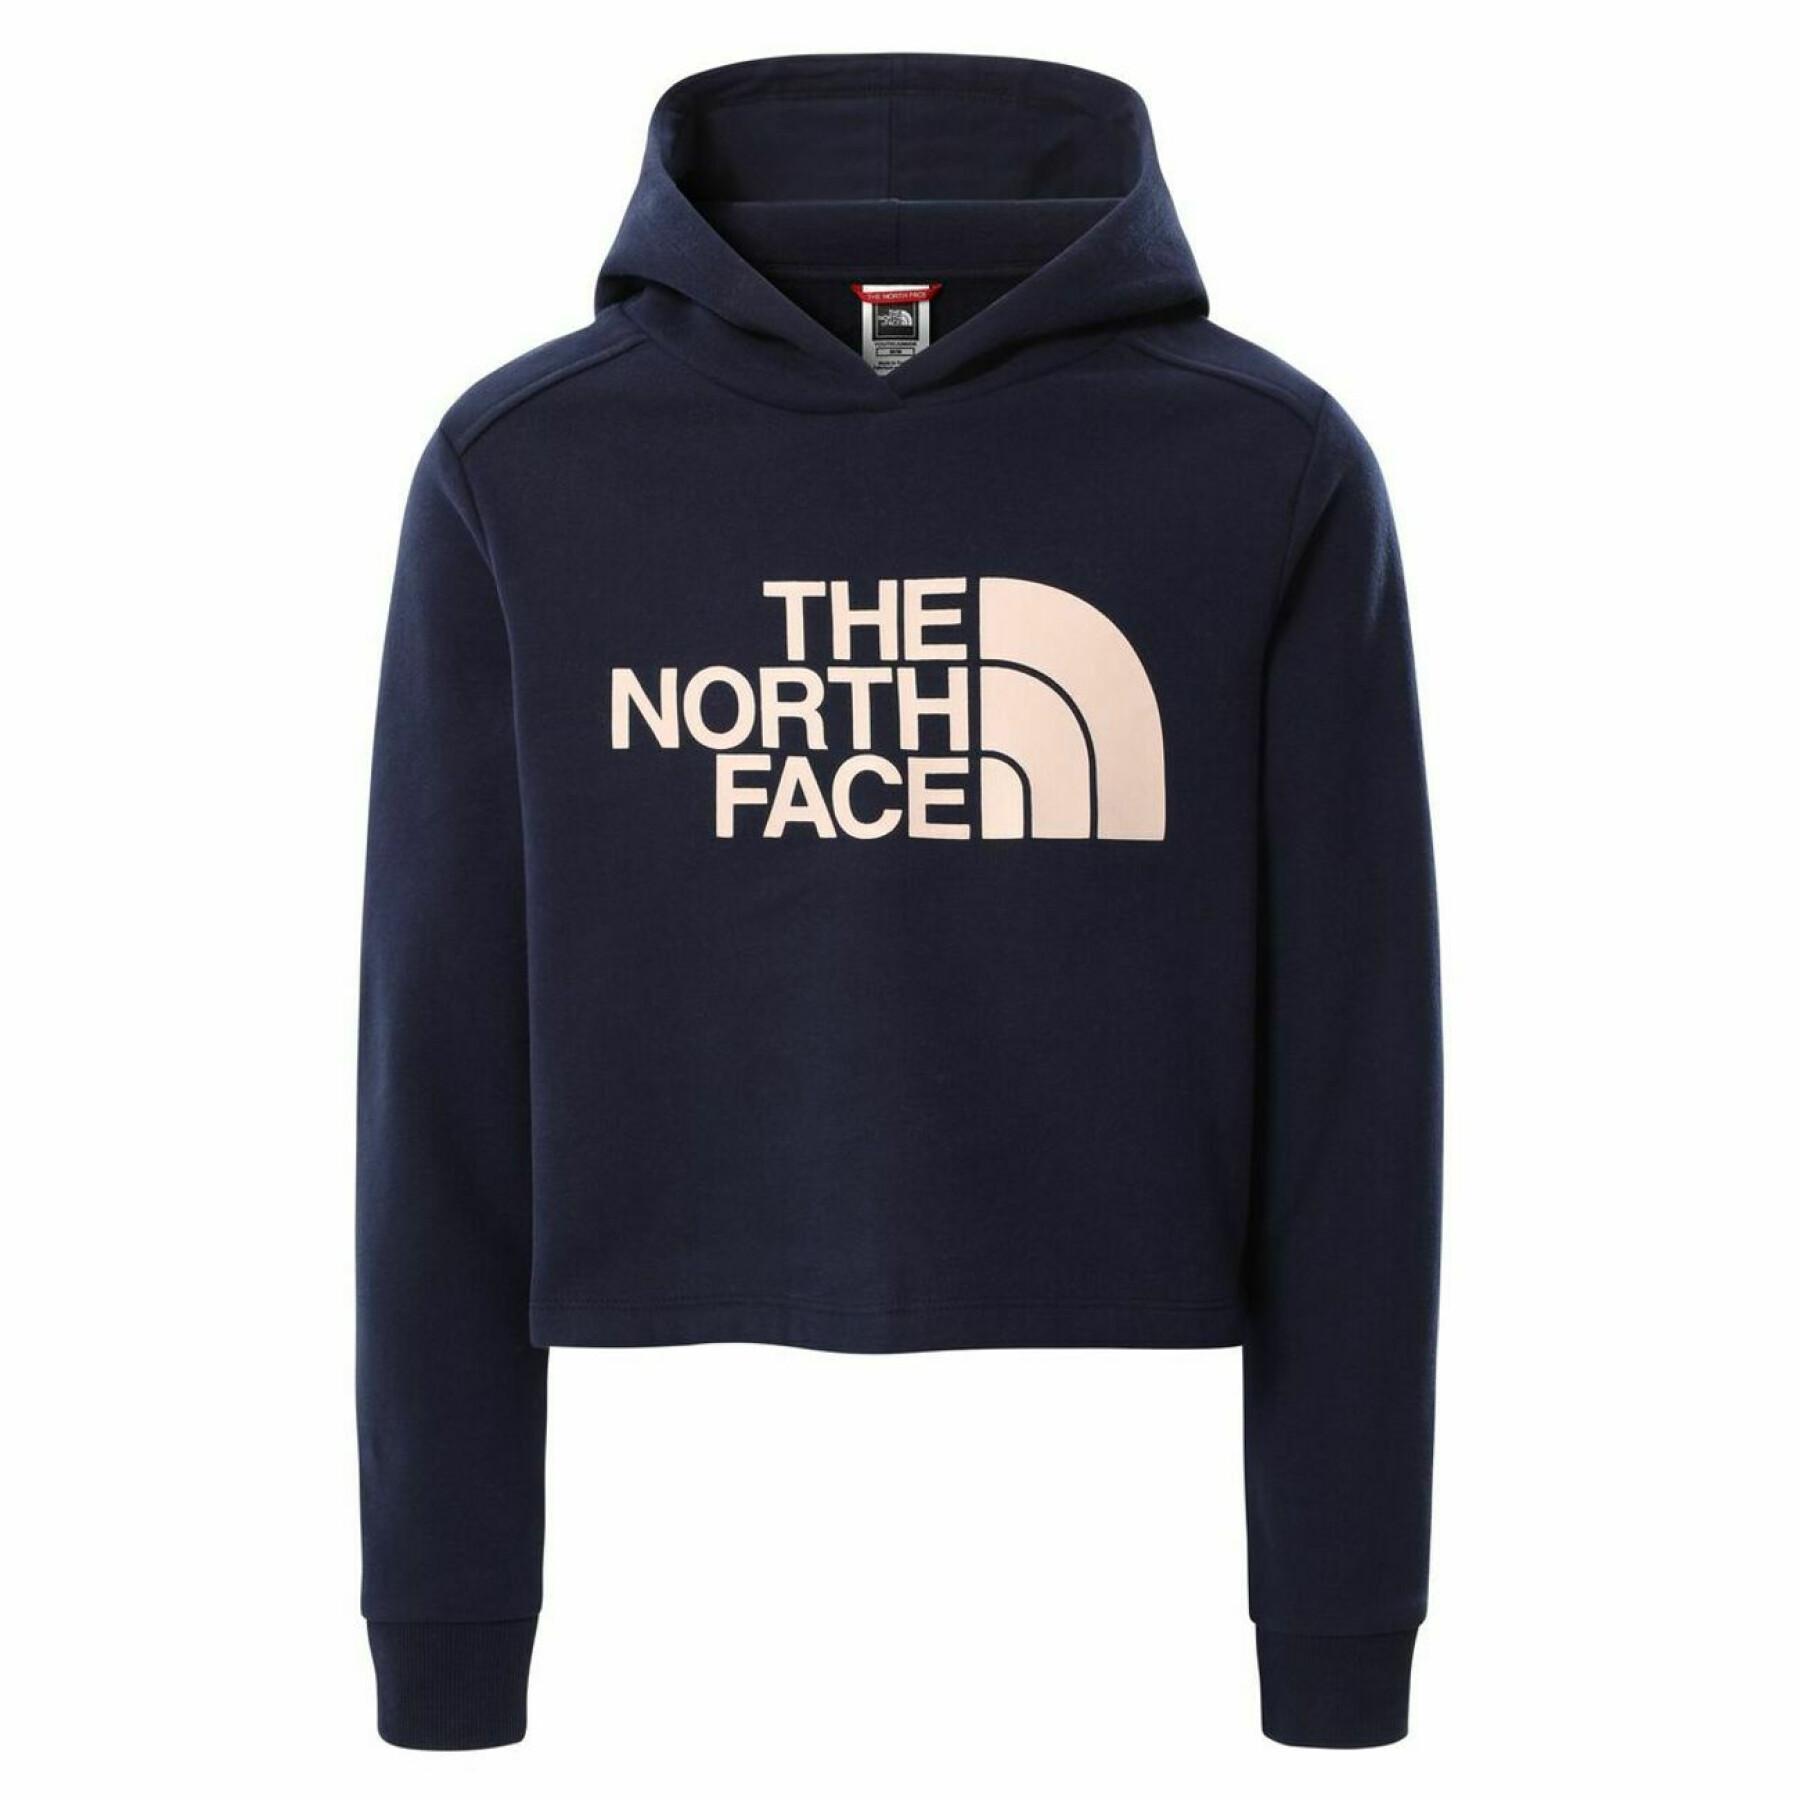 Croptop-Sweatshirt für Mädchen The North Face Coton